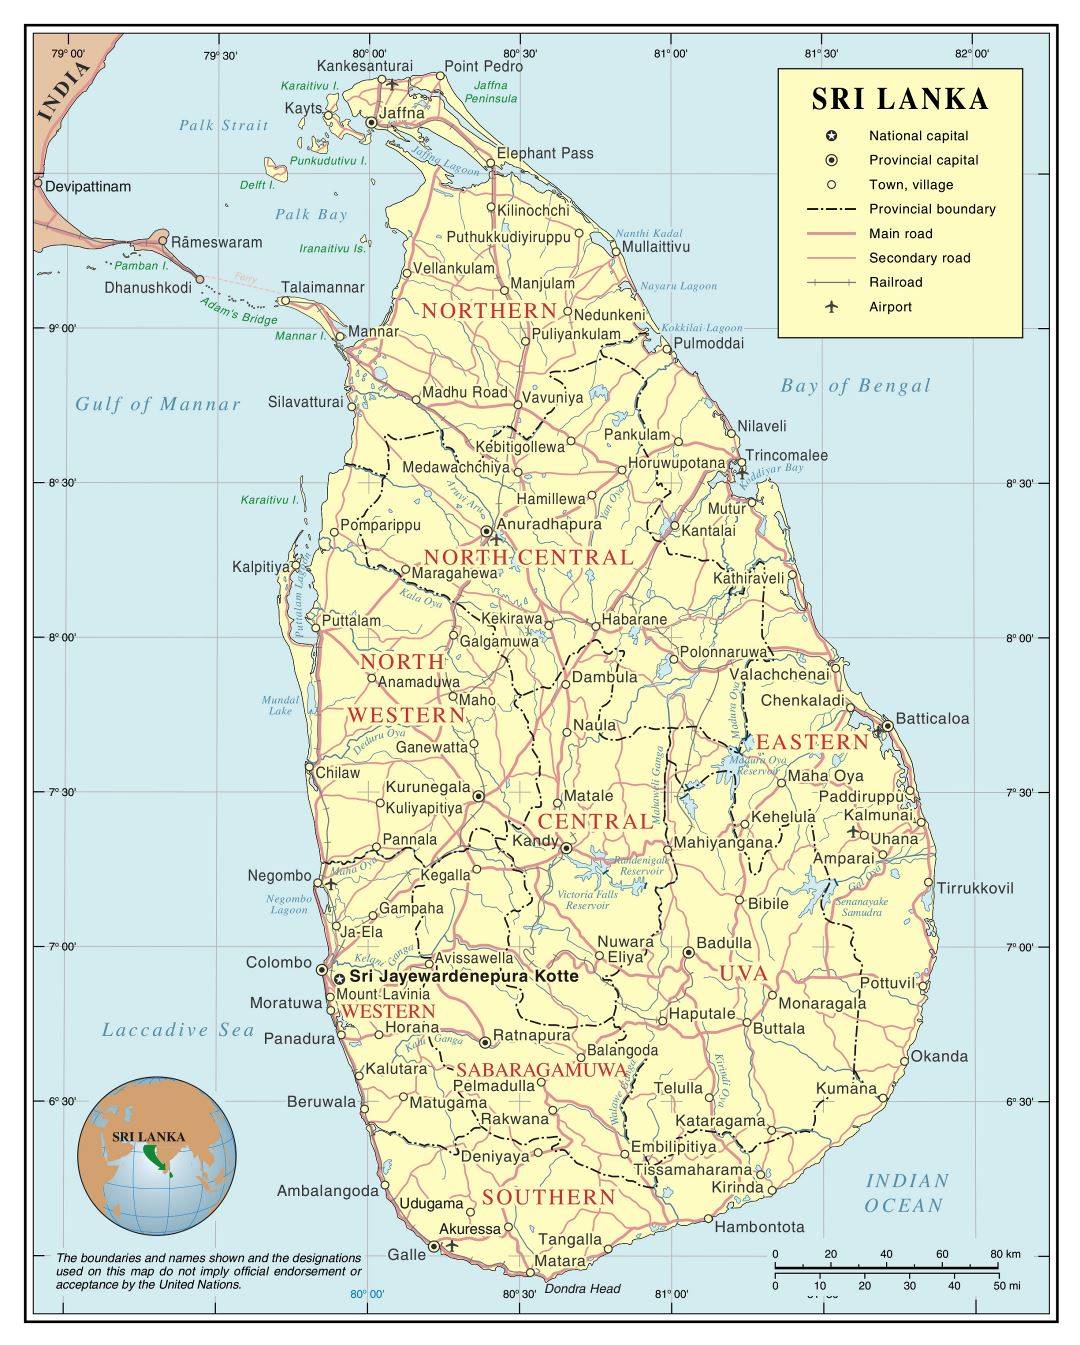 Большая детальная политическая и административная карта Шри-Ланки с дорогами, железными дорогами, городами и аэропортами